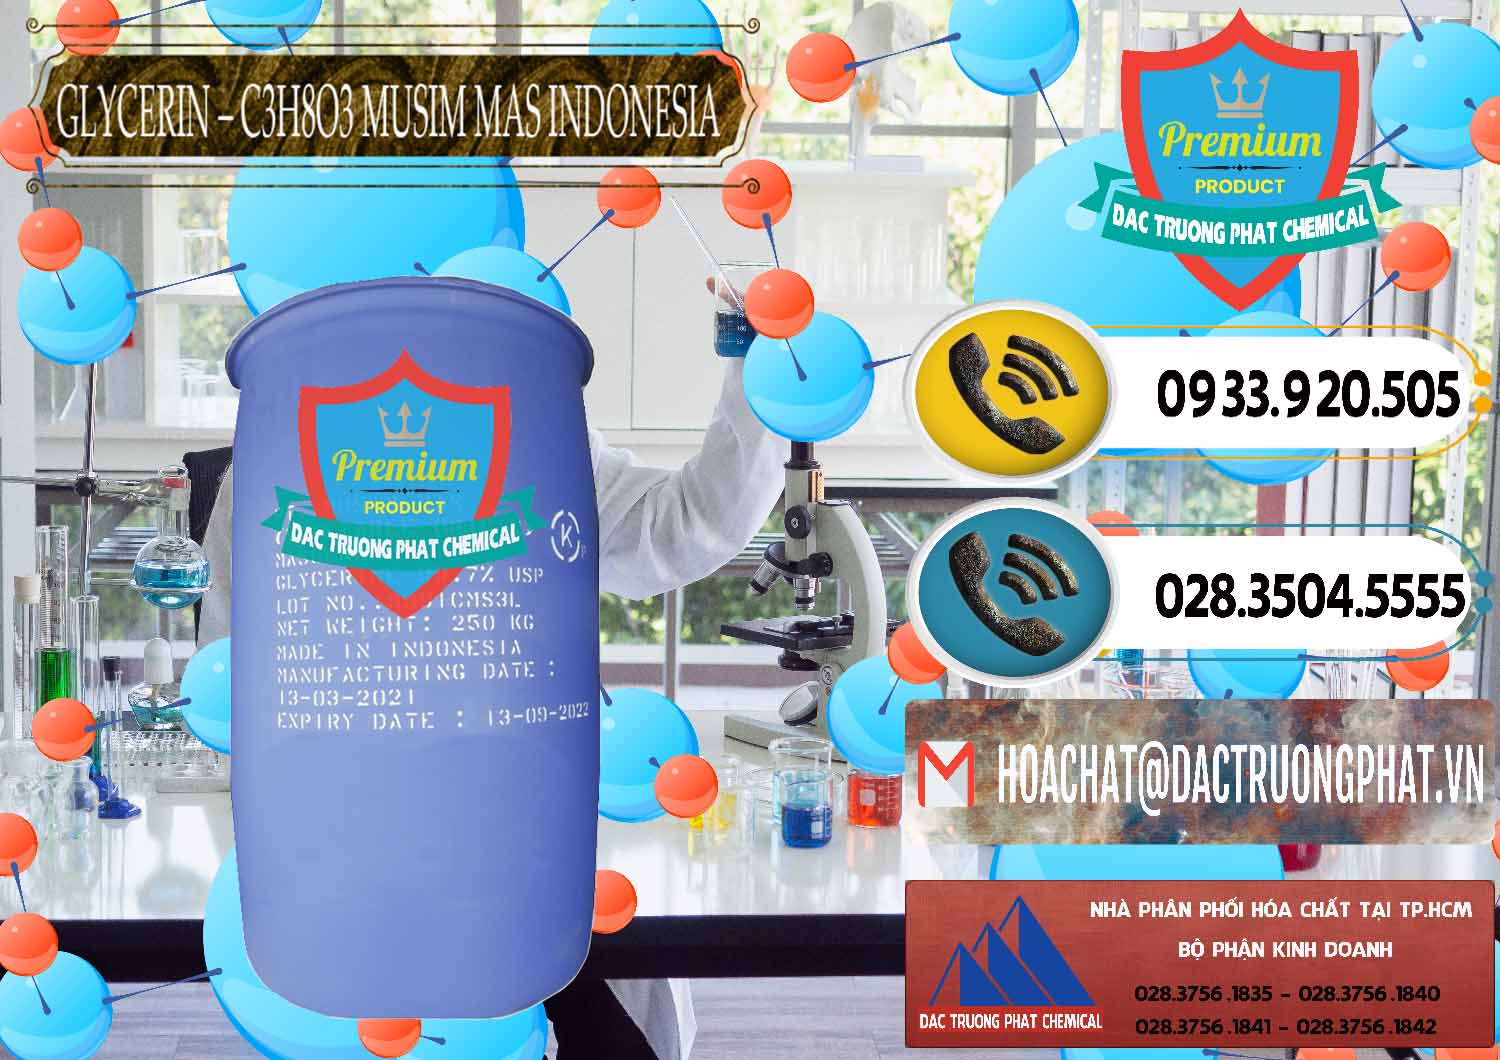 Công ty nhập khẩu và bán Glycerin – C3H8O3 99.7% Musim Mas Indonesia - 0272 - Nơi chuyên cung ứng ( phân phối ) hóa chất tại TP.HCM - hoachatdetnhuom.vn